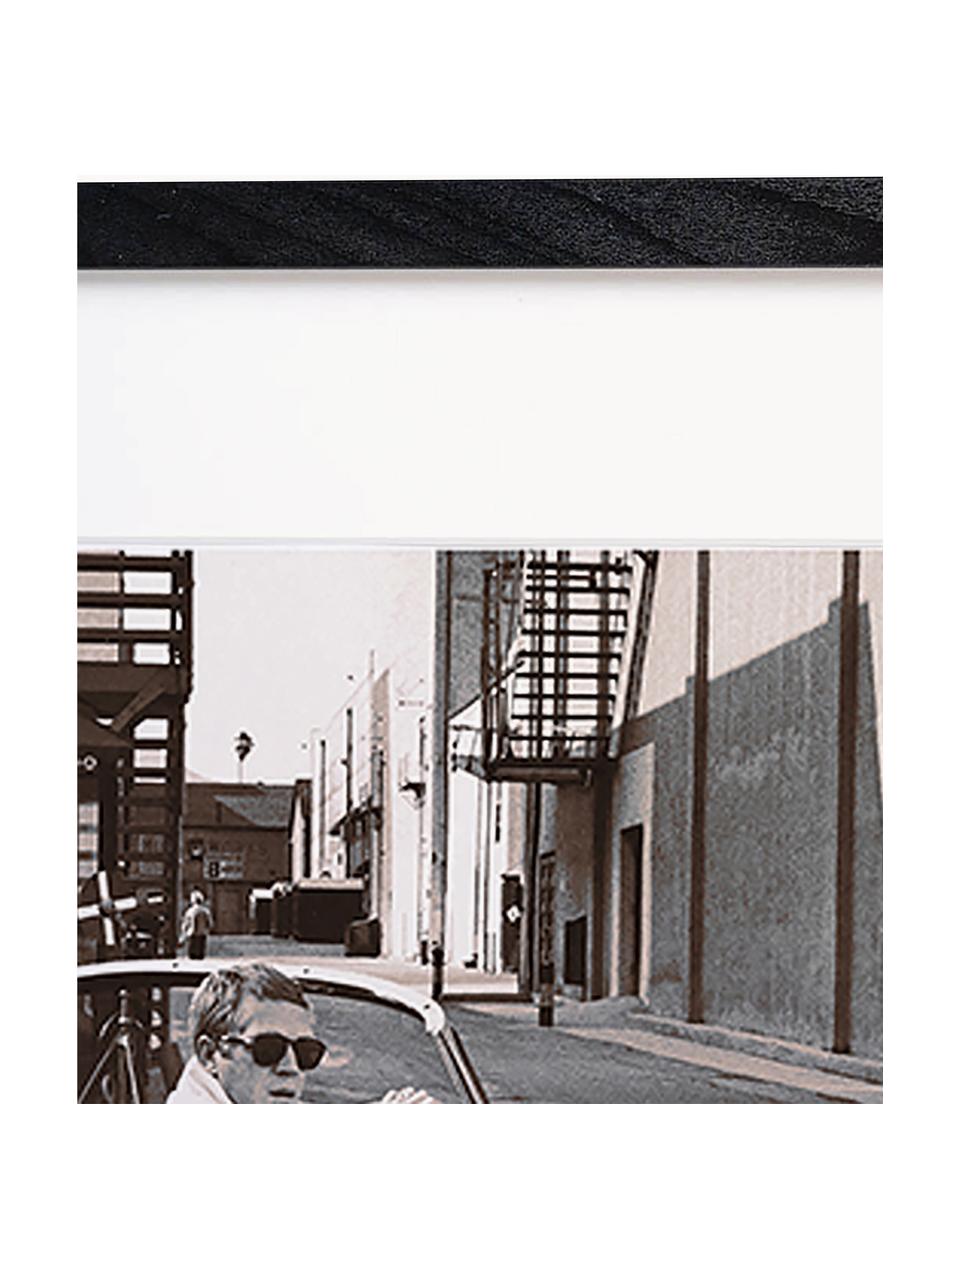 Foto incorniciata di Steve McQueen nella sua Jaguar, Struttura: legno di faggio, certific, Immagine: stampa digitale su carta , Nero, bianco latte, Larg. 43 x Alt. 33 cm